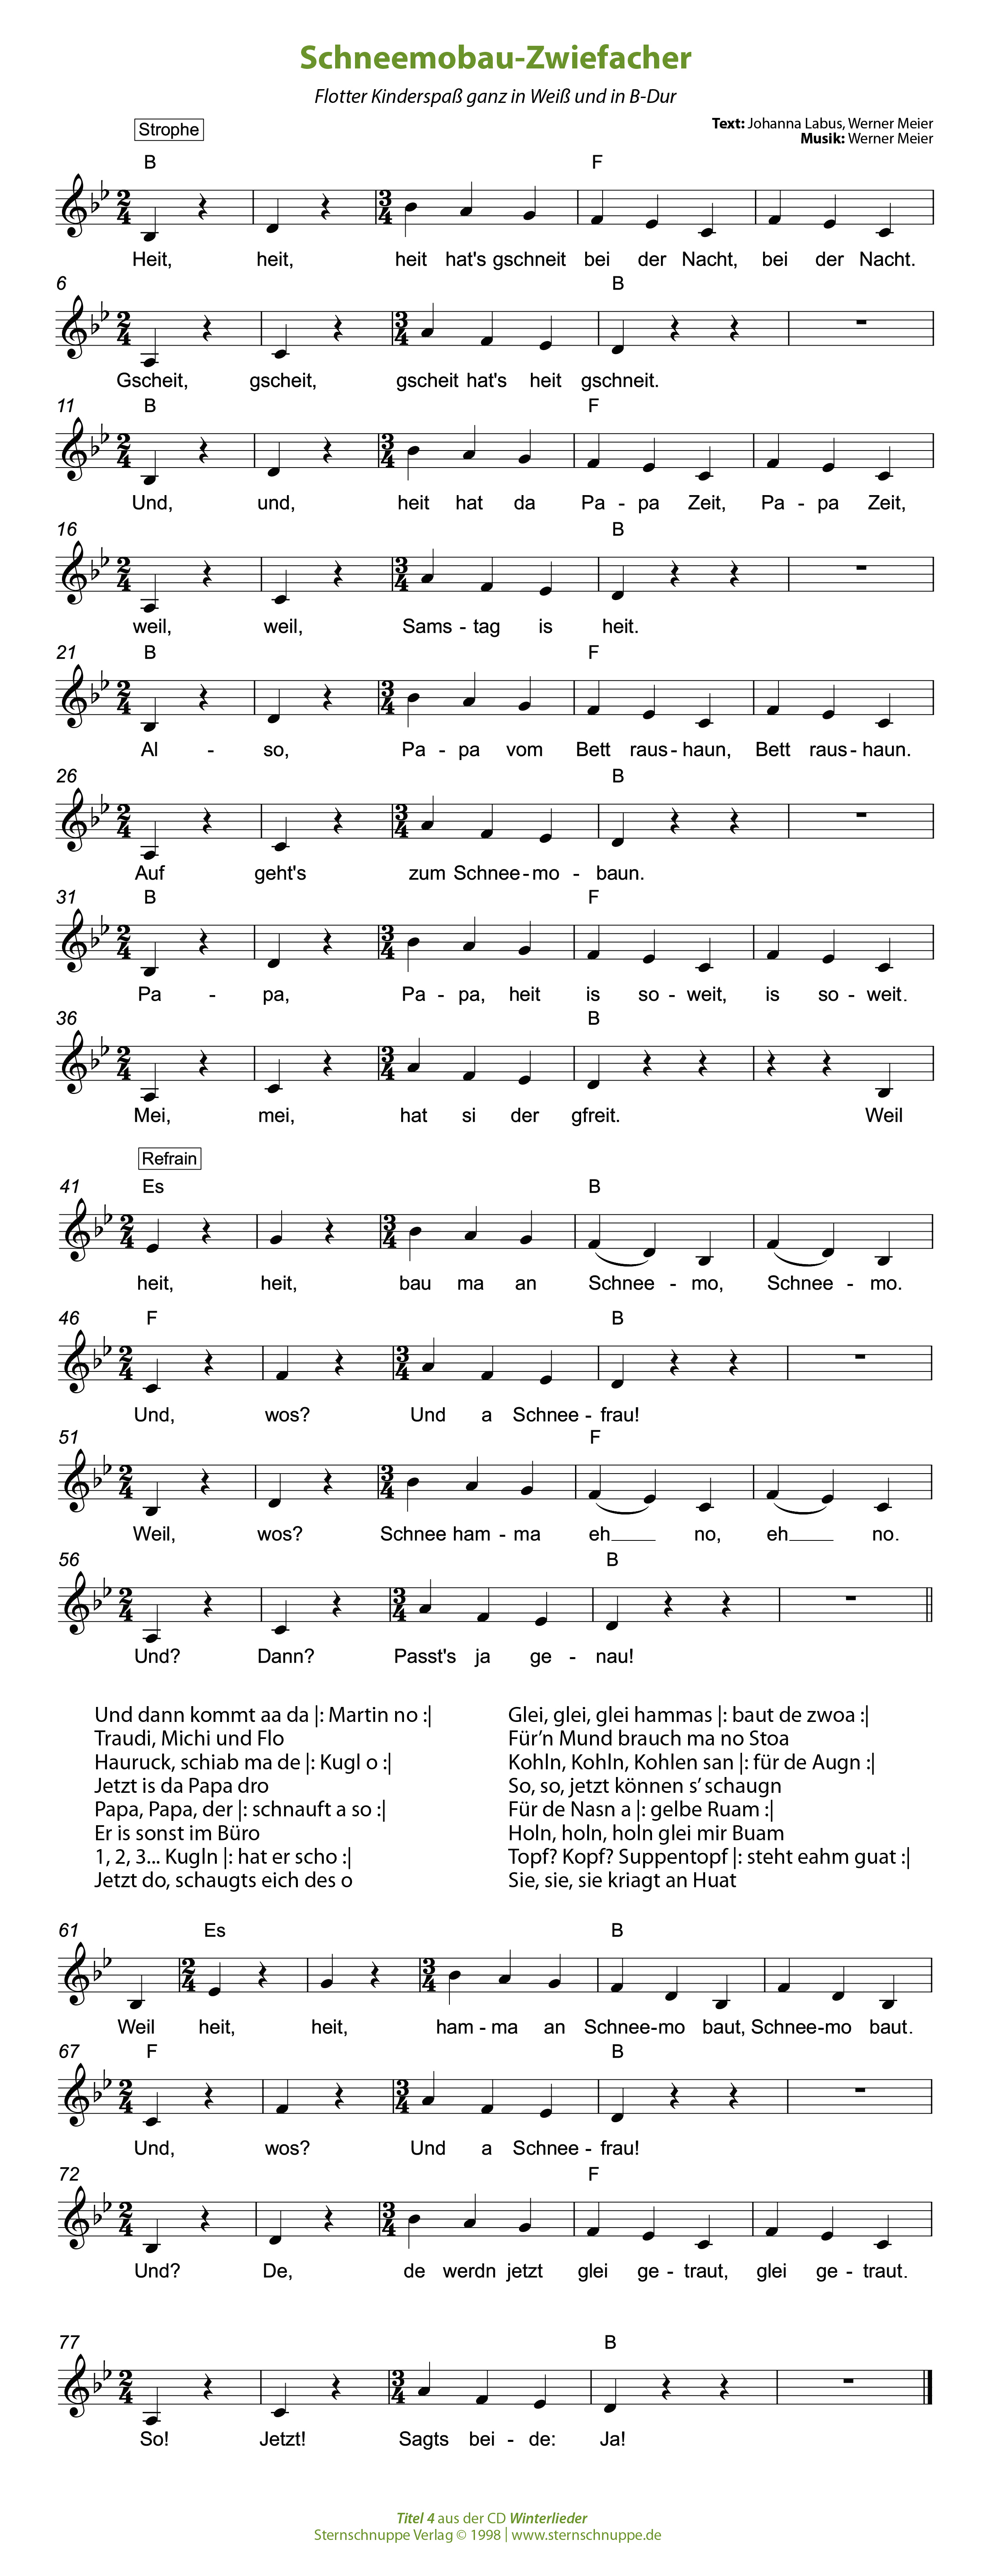 Liedtext, Akkorde und Noten vom Kinderlied Schneemobau-Zwiefacher